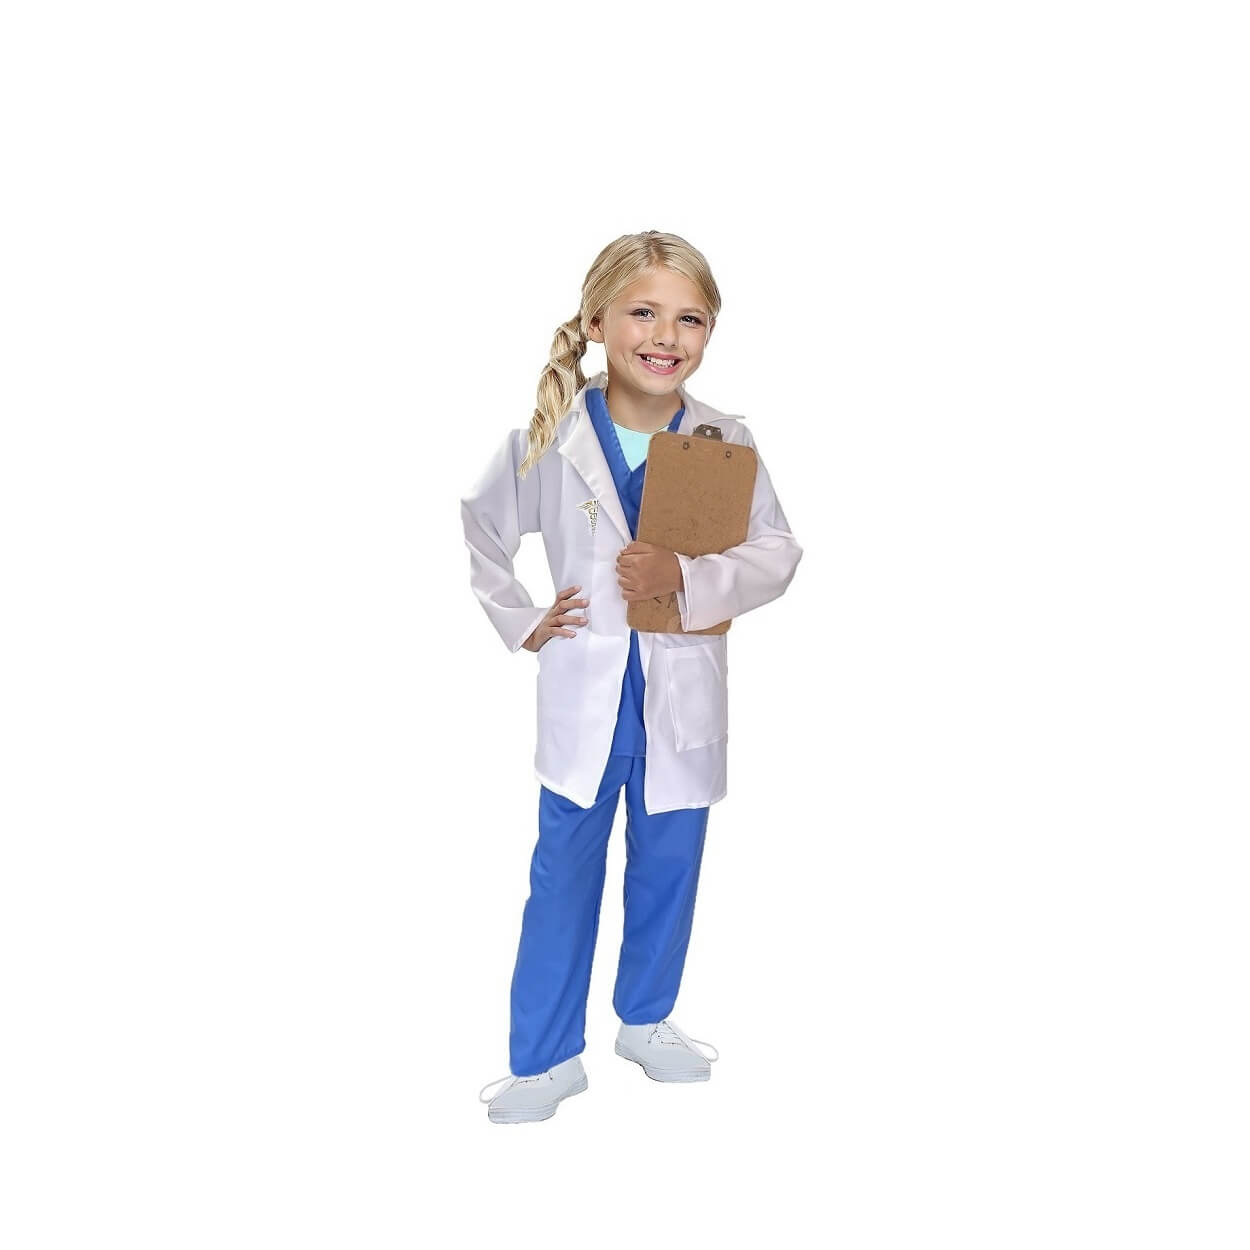 Disfraces de Doctores - Disfraces para Niñas y Niños - Disfraz de Enfermero y Cientifica